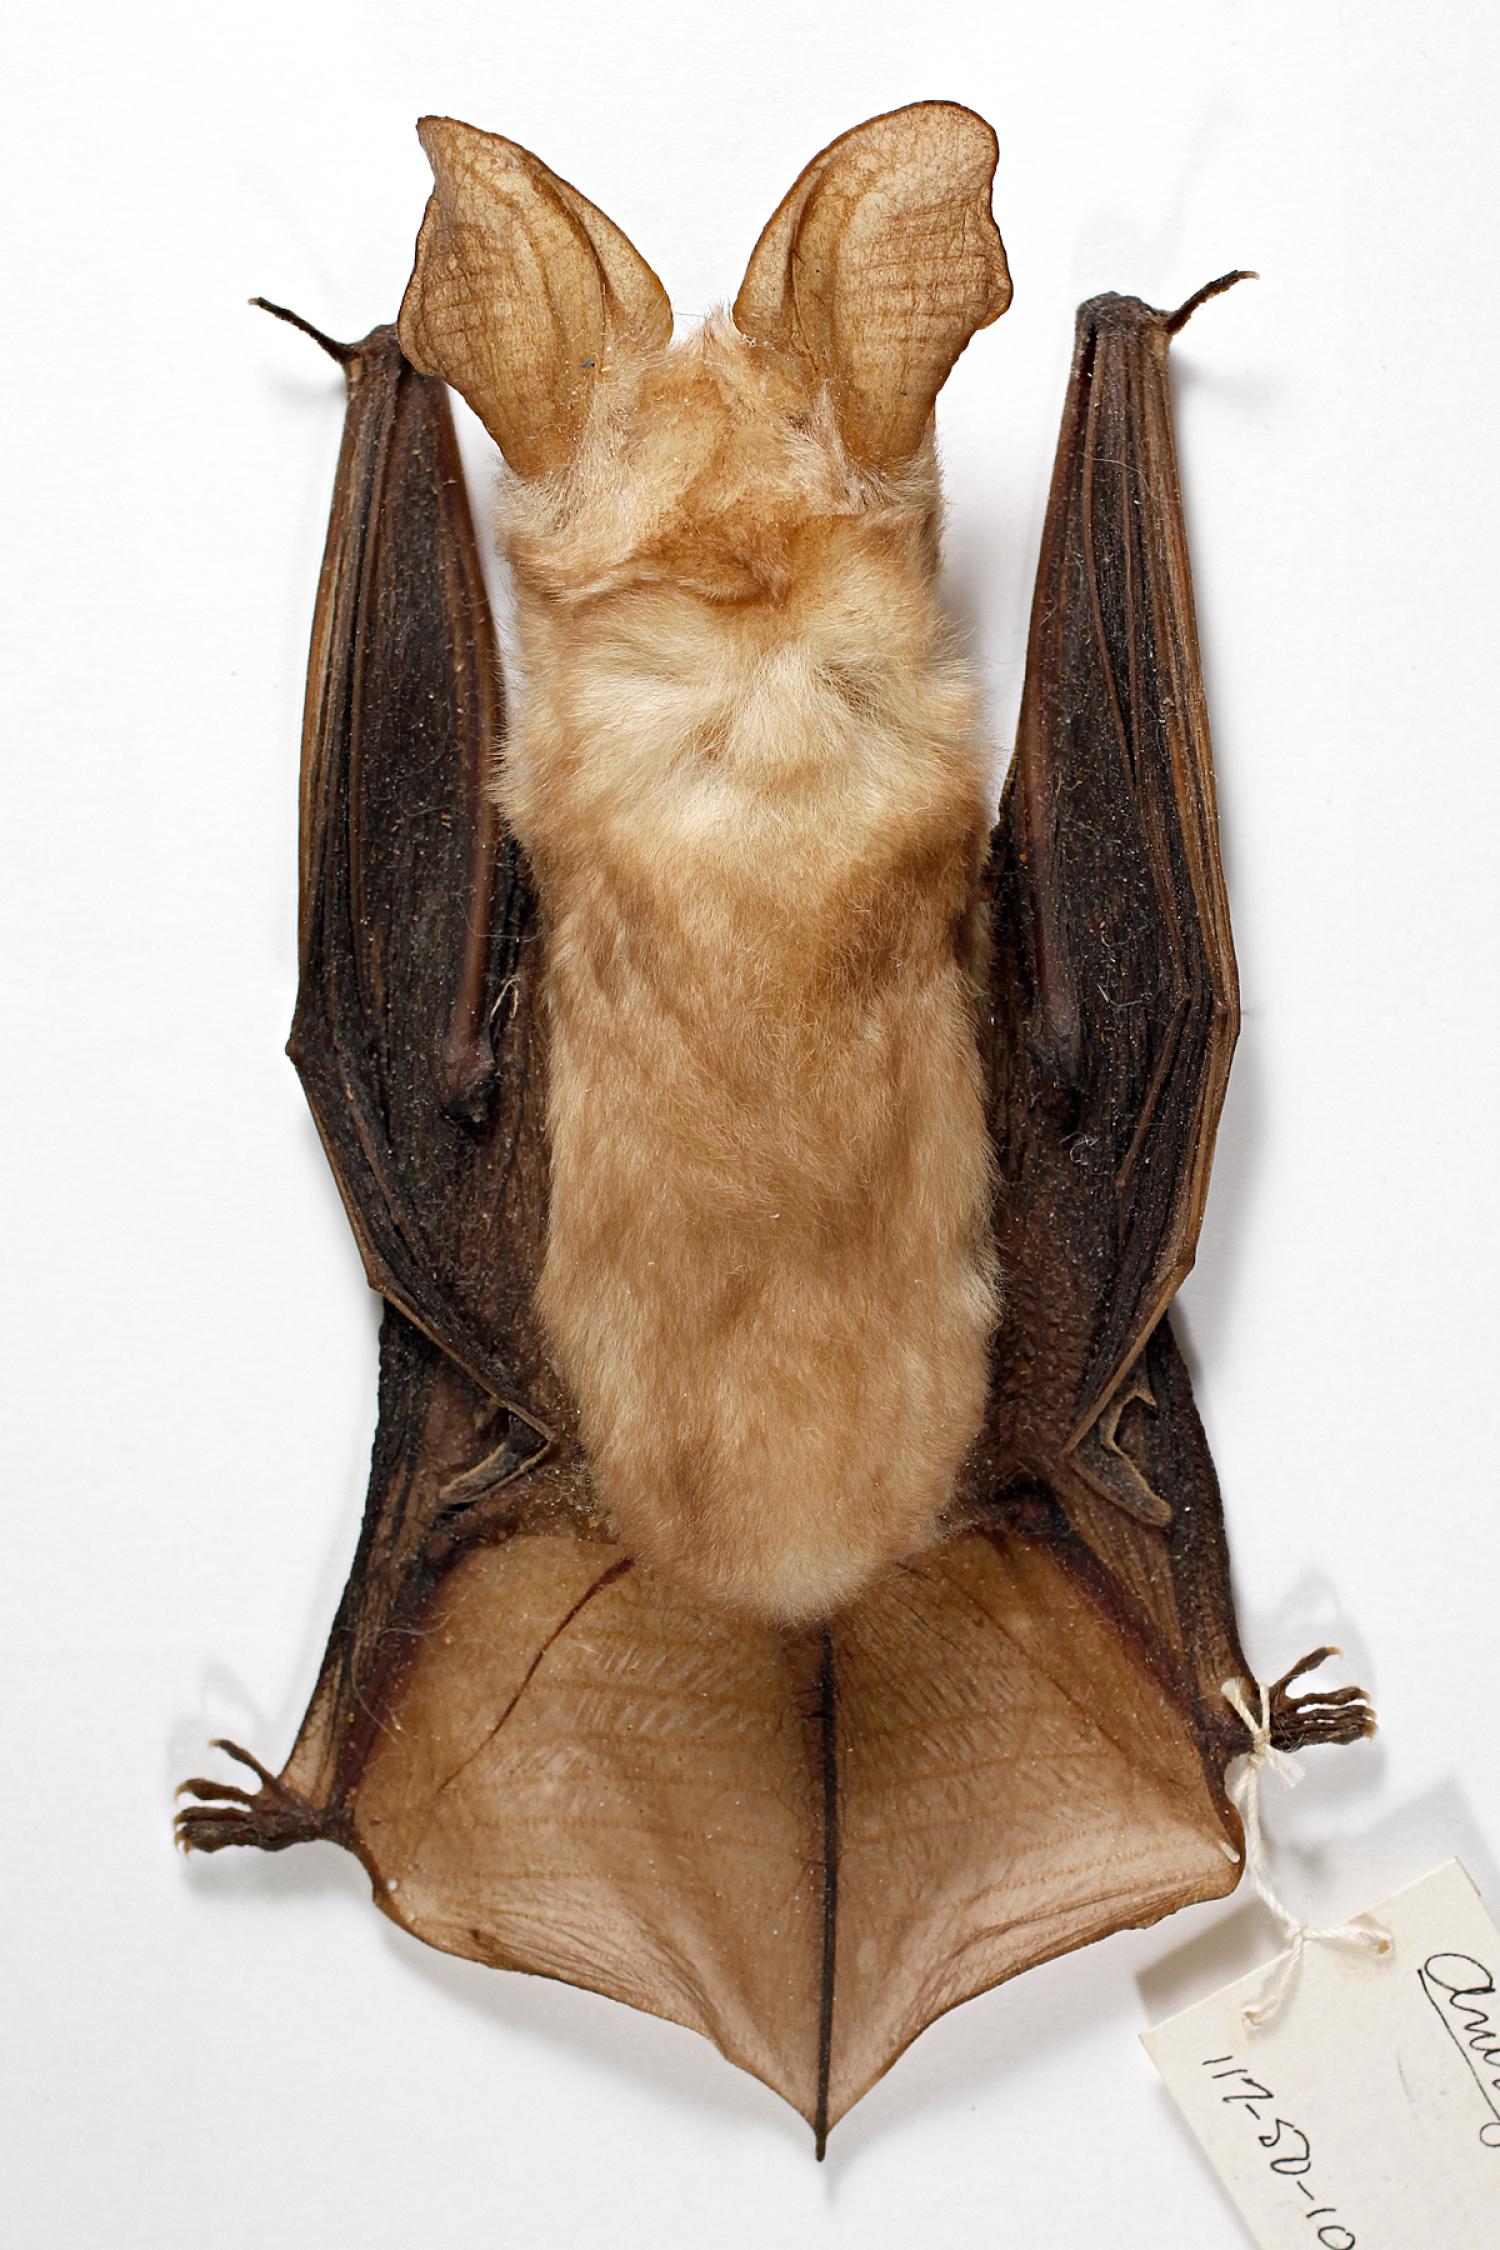 Pallid bat (Antrozous pallidus pallidus) 